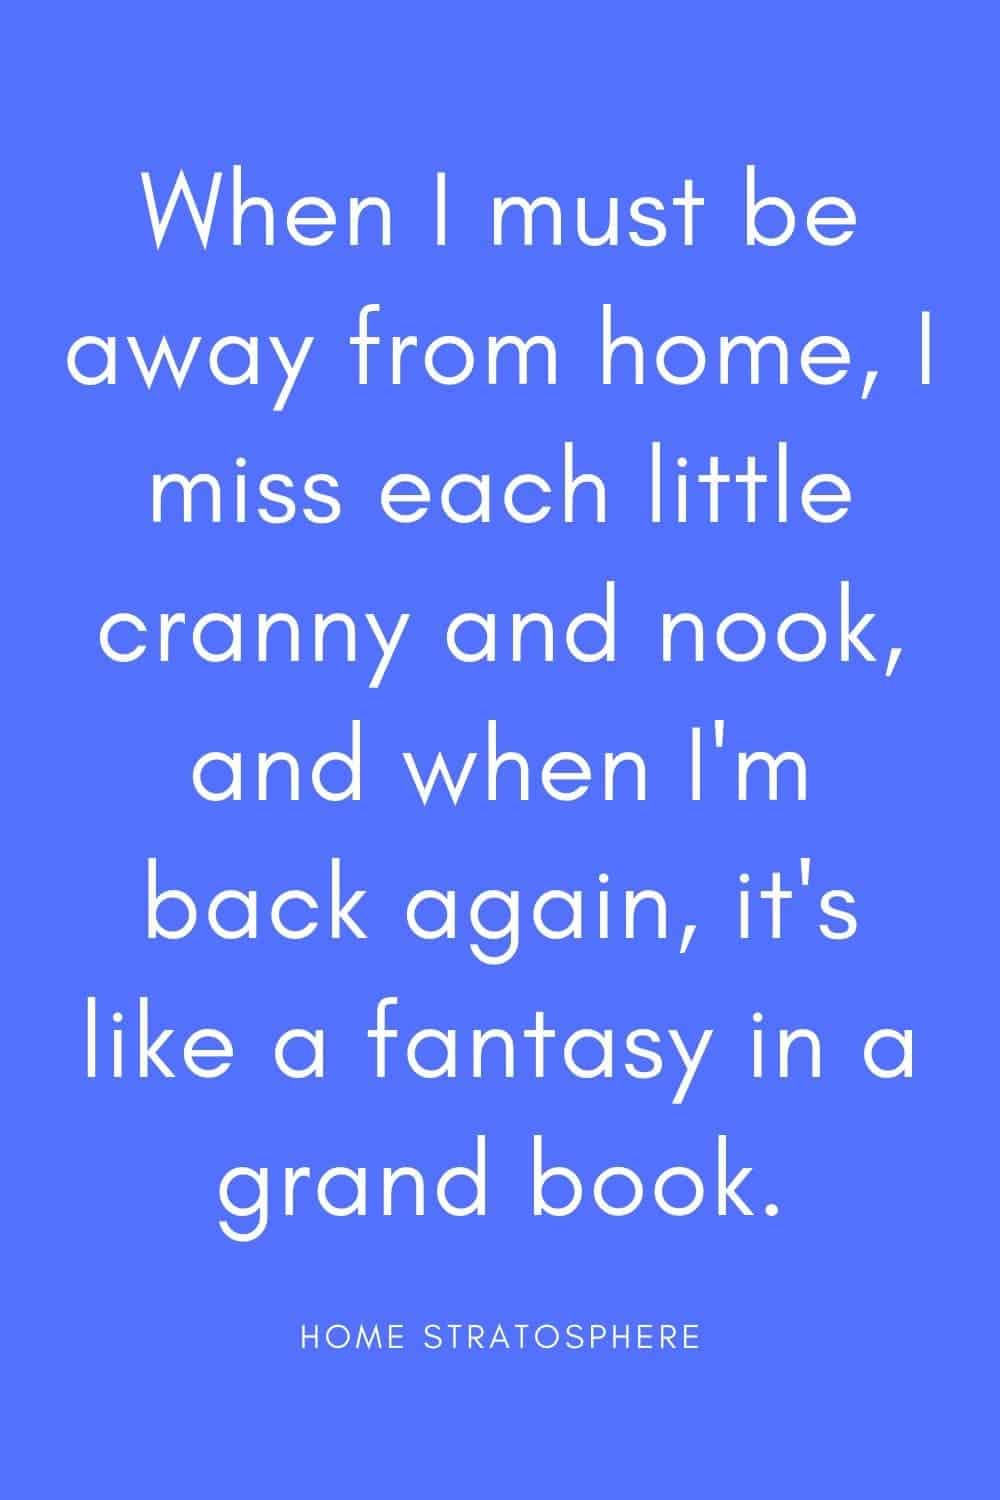 “当我必须离开家的时候，我想念每一个小缝隙和角落，当我回来的时候，它就像一本伟大的书中的幻想。”